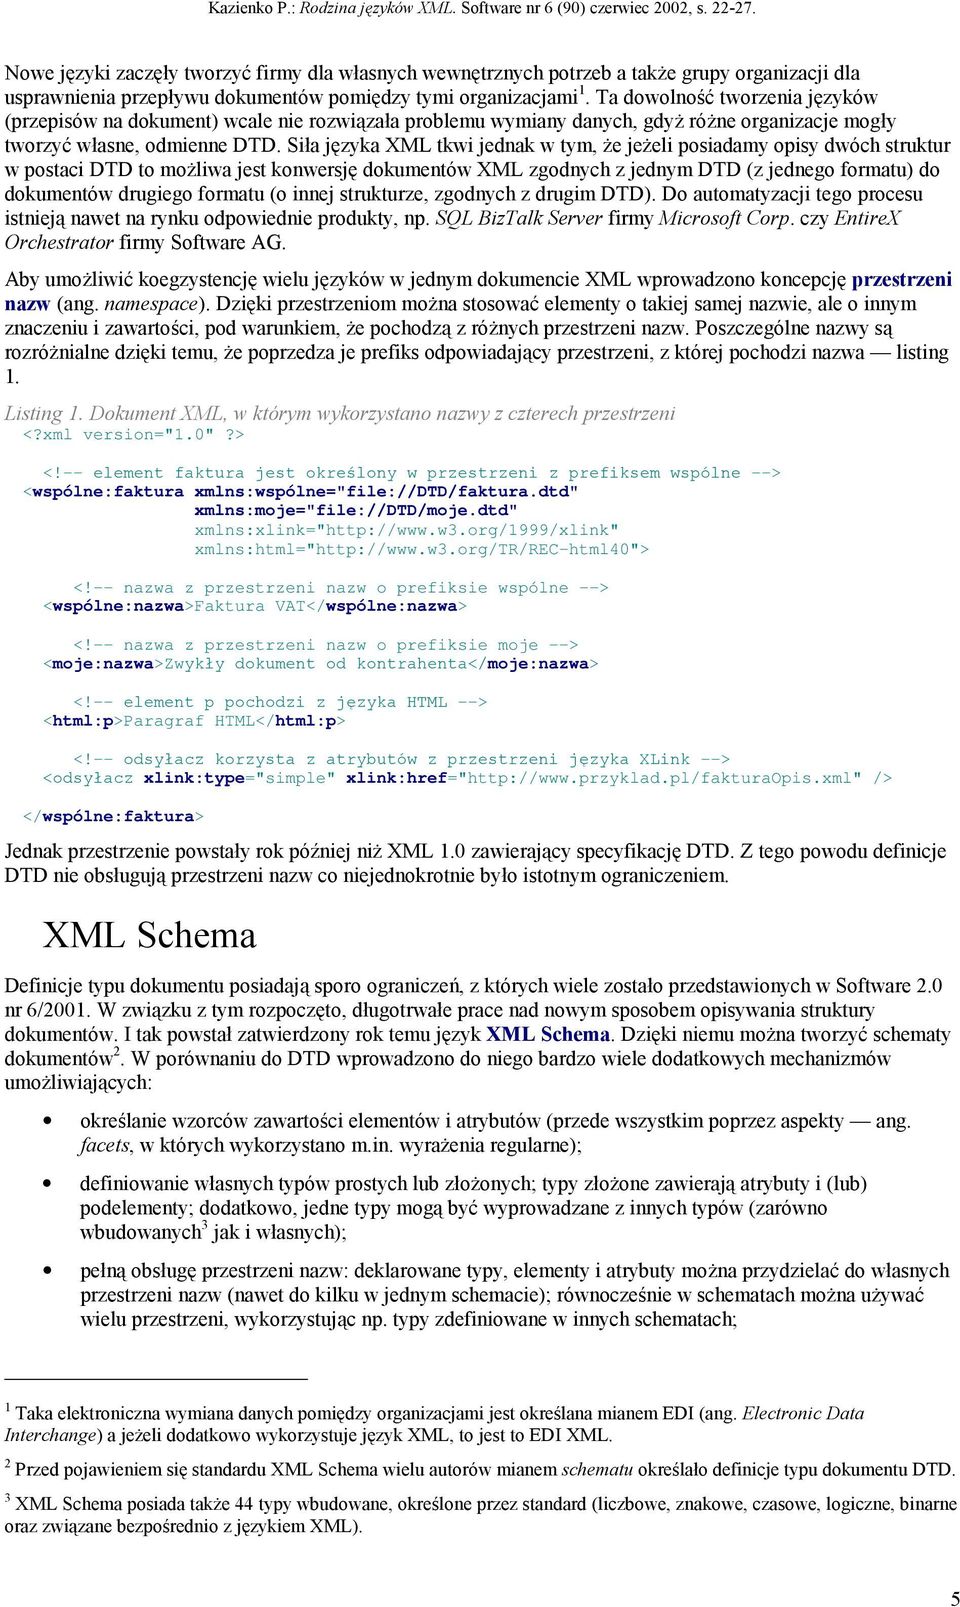 Siła języka XML tkwi jednak w tym, że jeżeli posiadamy opisy dwóch struktur w postaci DTD to możliwa jest konwersję dokumentów XML zgodnych z jednym DTD (z jednego formatu) do dokumentów drugiego